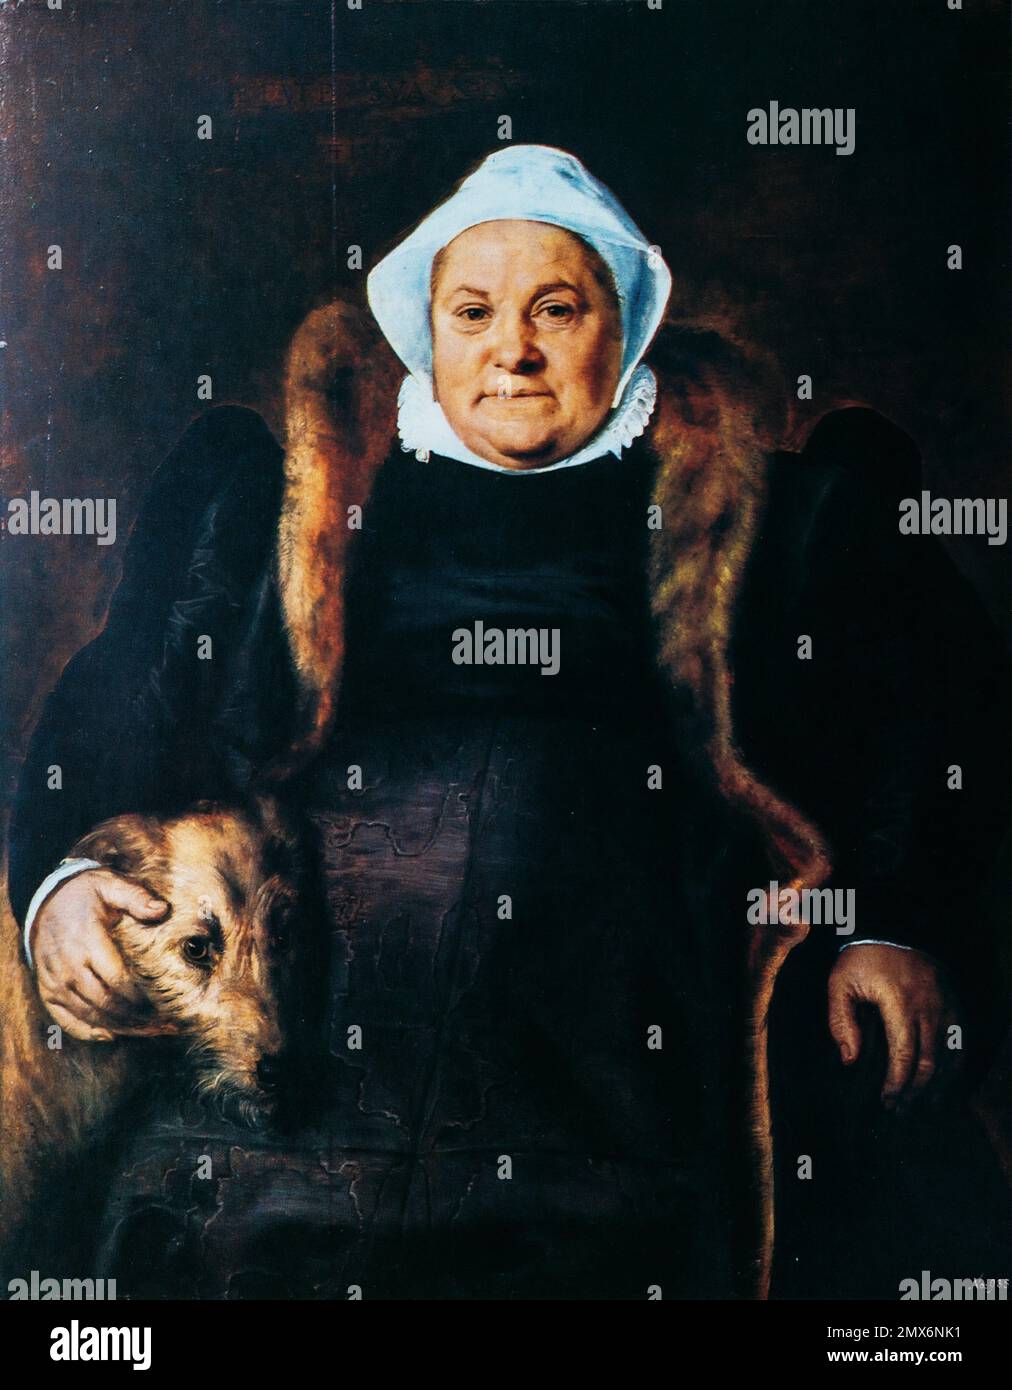 Frans Floris The Elder, Portrait Of An Elderly Lady. Frans Floris De Vriendt Was Flemish Painter, Draughtsman, Print Artist And Tapestry Designer. Stock Photo